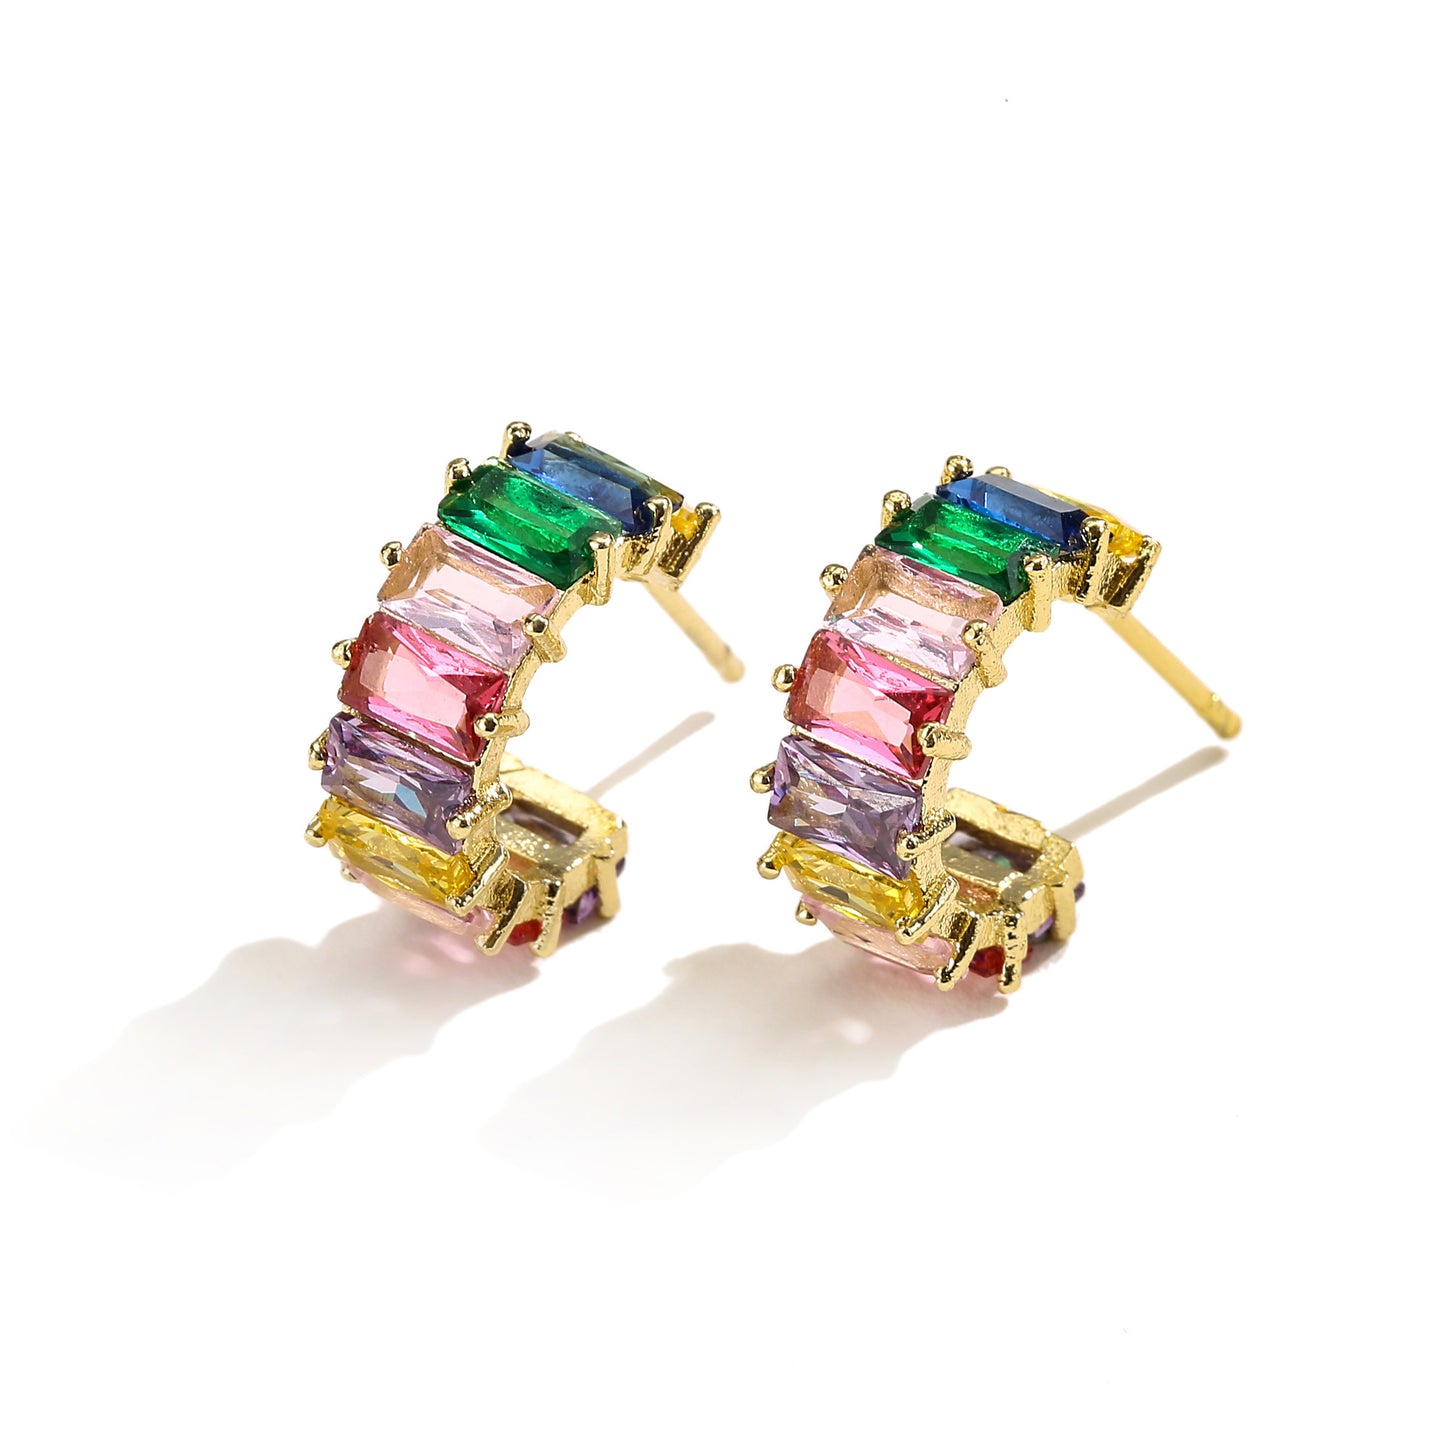 Multicolor C-shaped earrings